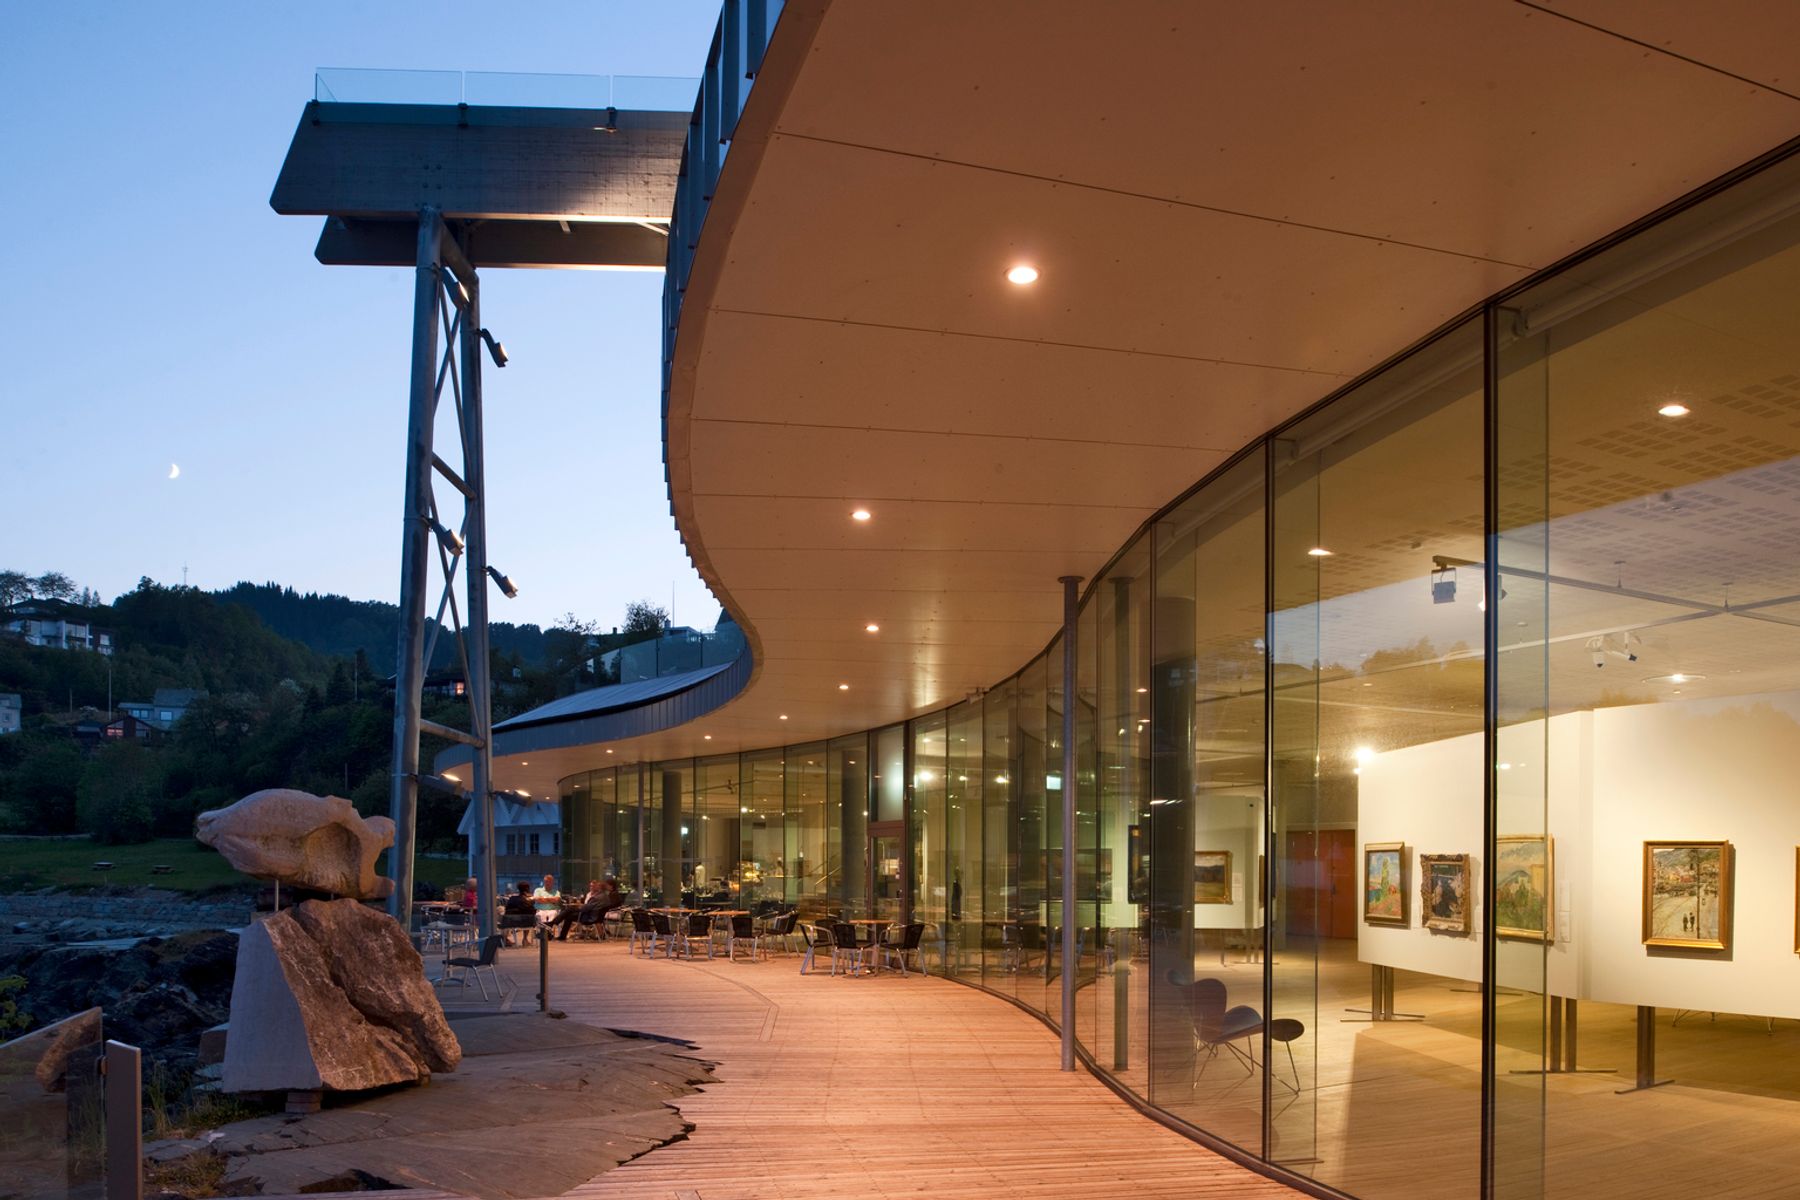 Centro cultural Oseana, Os. Arquitectura: Grieg Arkitekter, Bergen. Diseño de iluminación: Multiconsult AS. Fotografía: Thomas Mayer, Neuss.